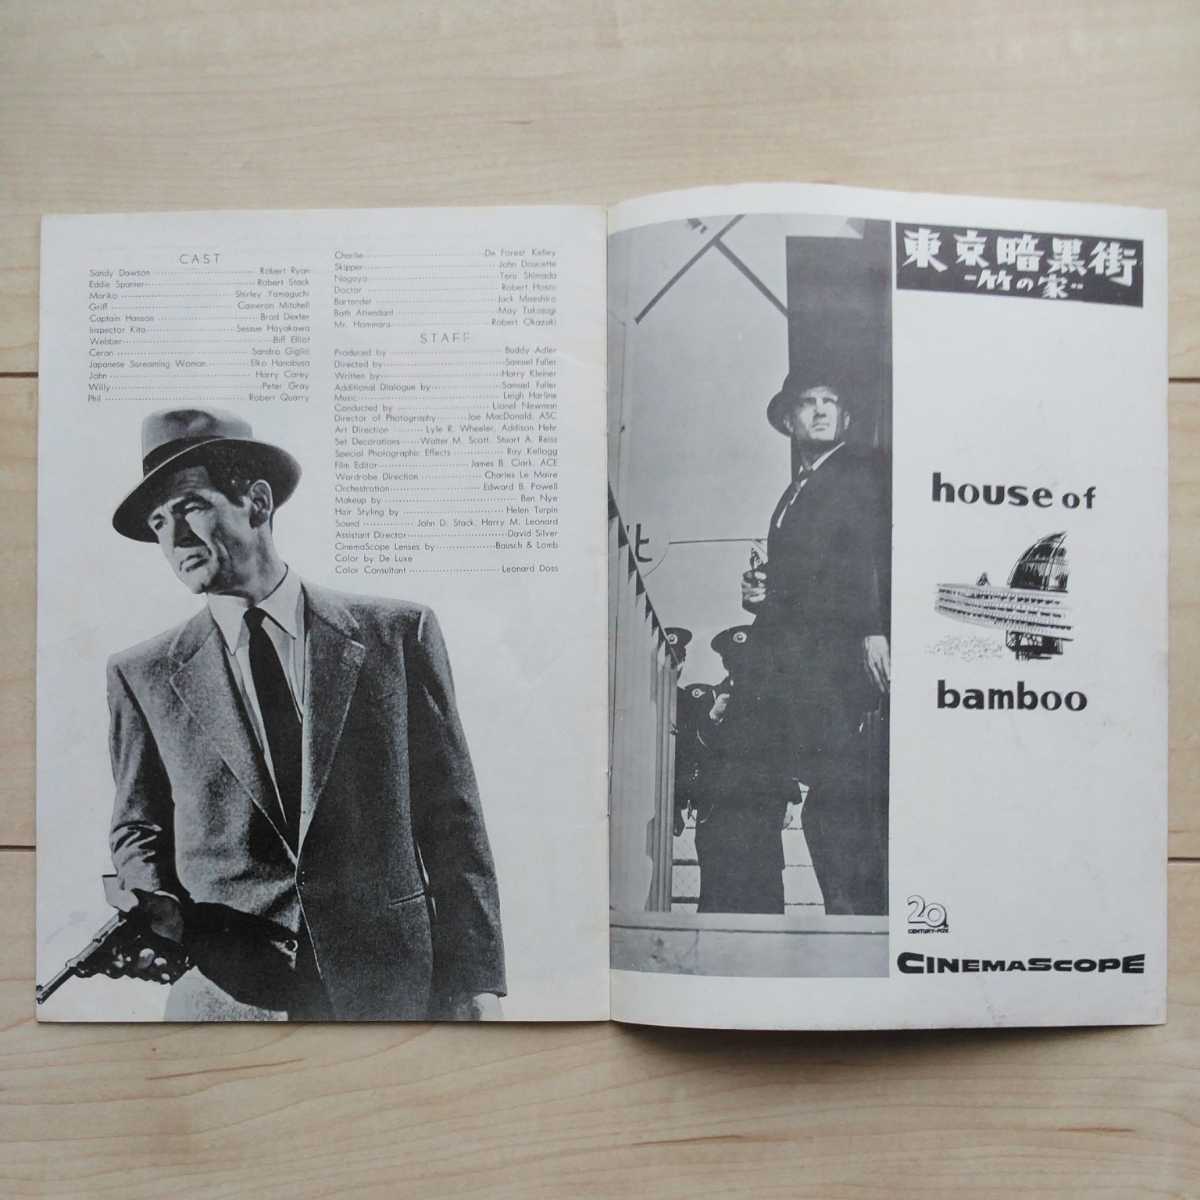 ■『東京暗黒街竹の家(House of Bamboo)』Pamphlet１冊。S.Fuller監督。R.Stack・山口淑子(李香蘭)・早川雪州出演。1955年。スカラ座。_画像2